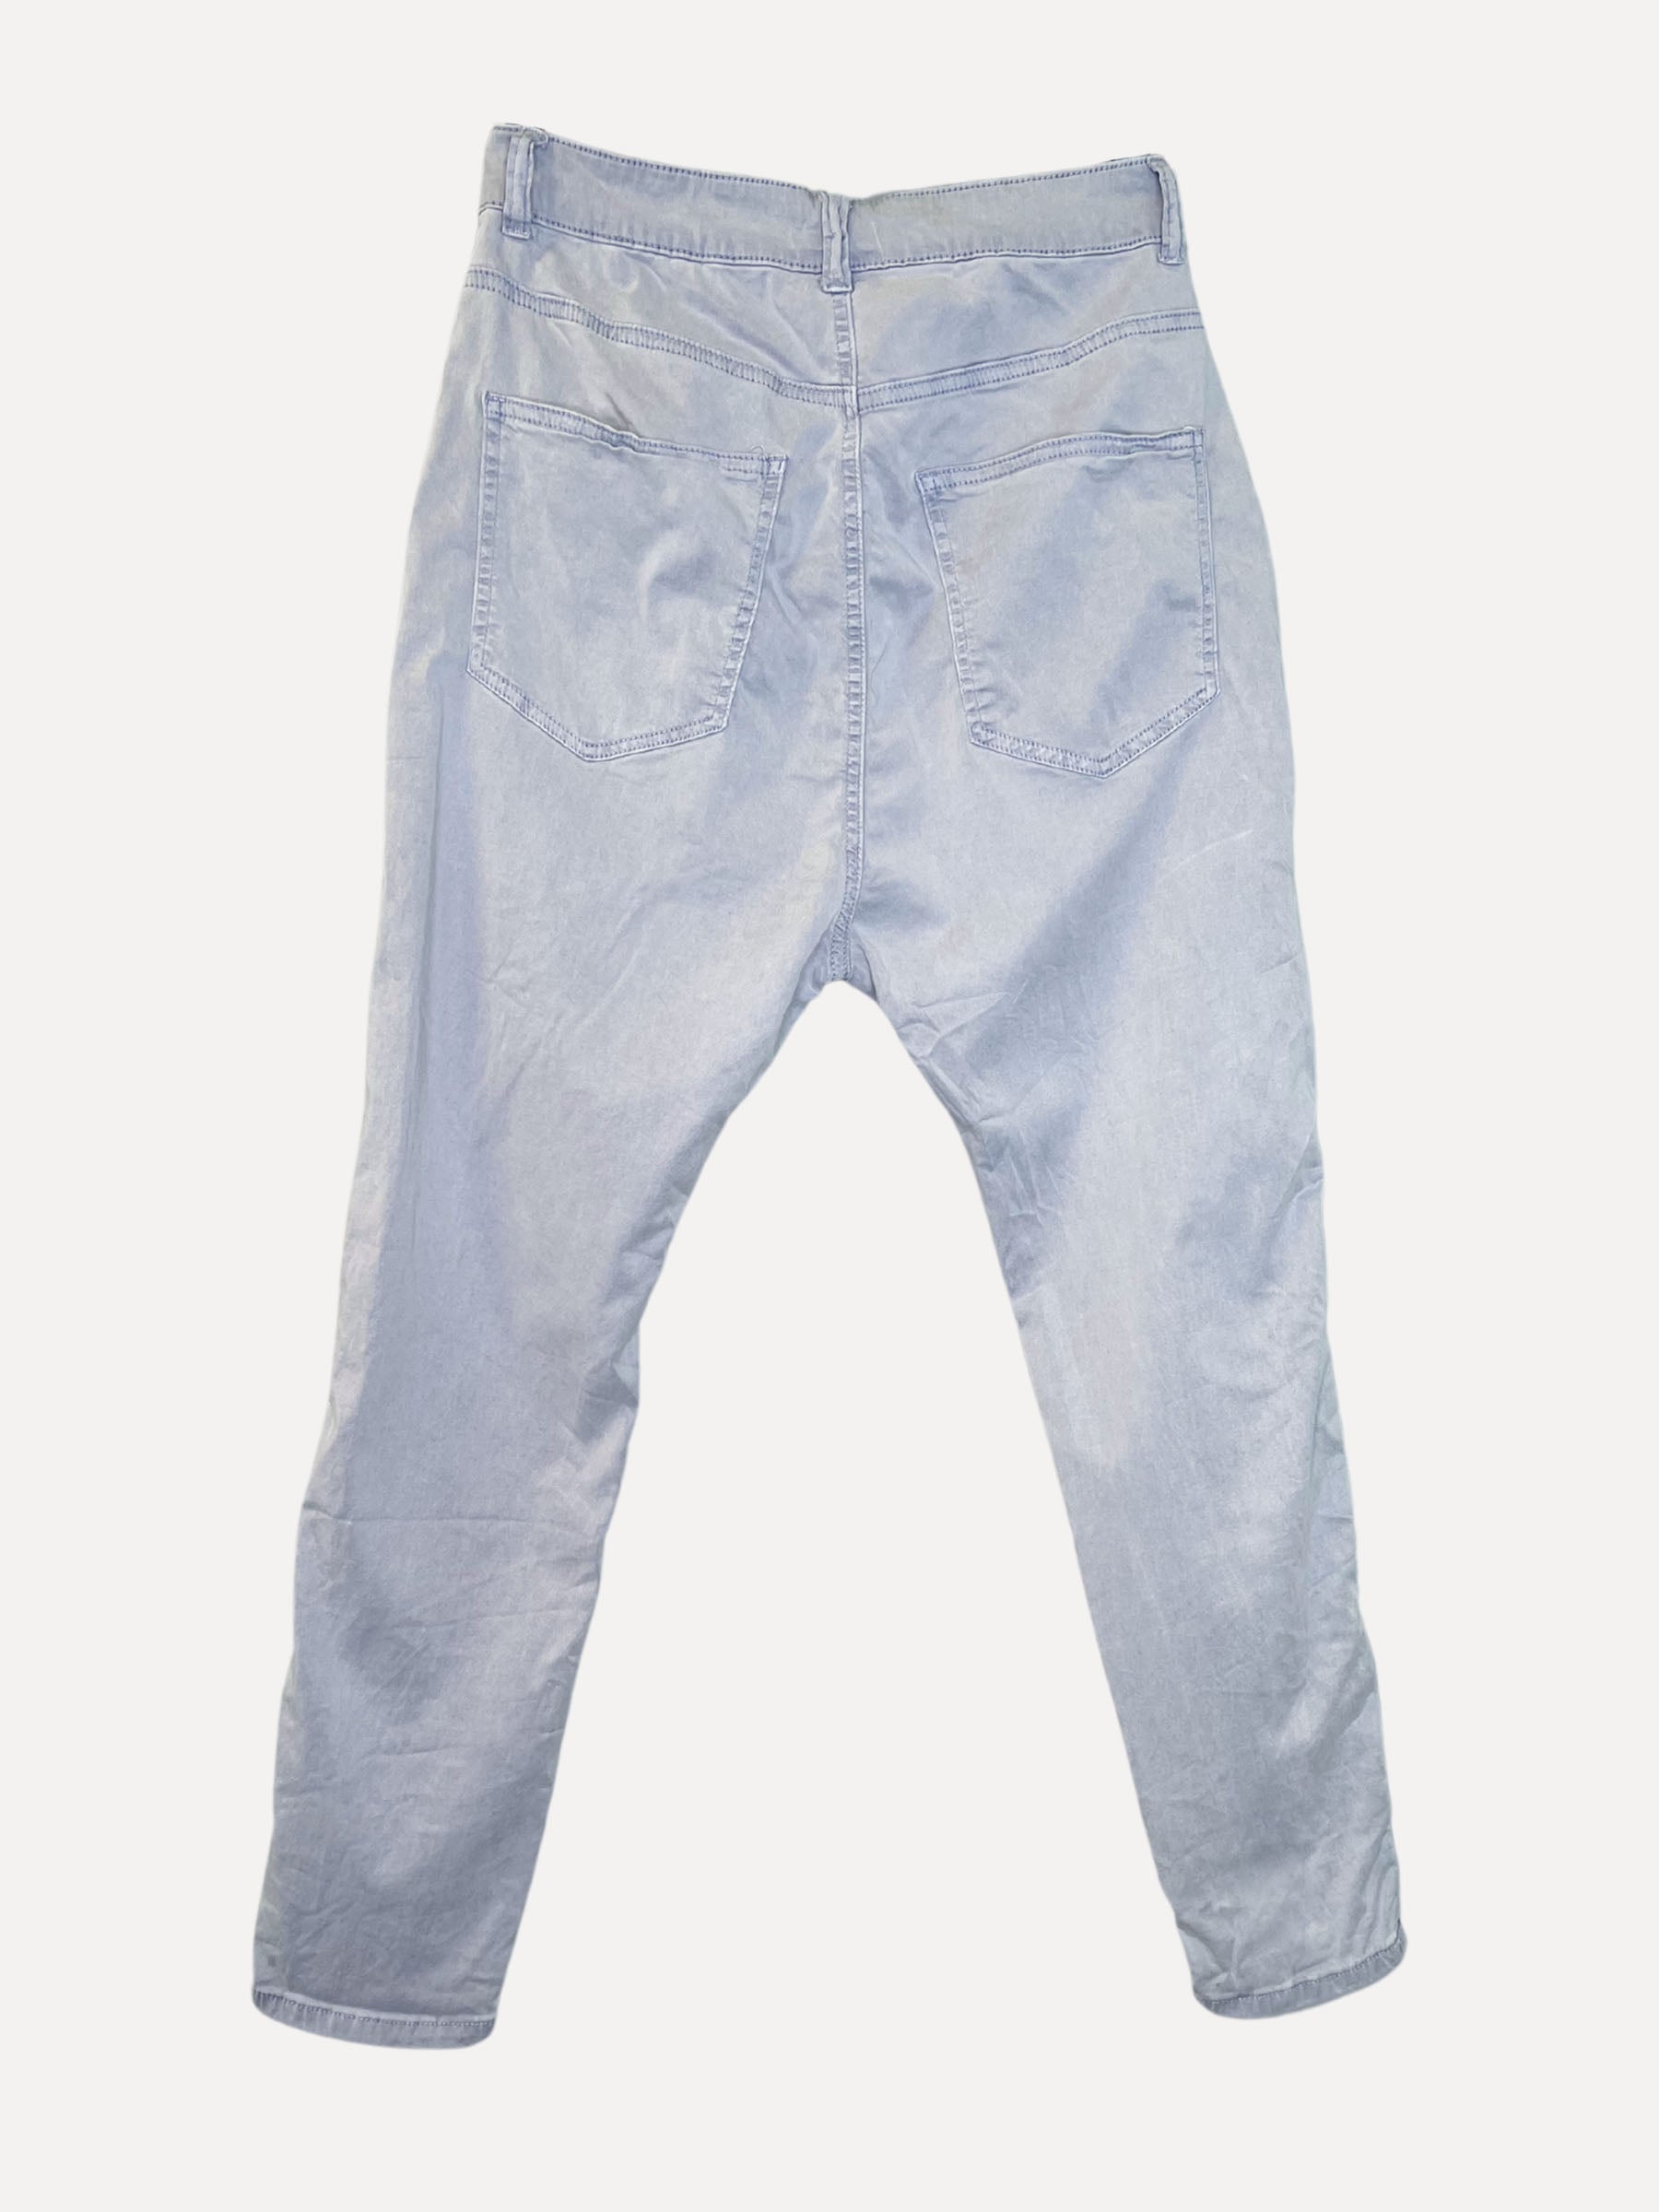 BOYFRIEND BAGGY Jeans, Sky Blue 8201-37